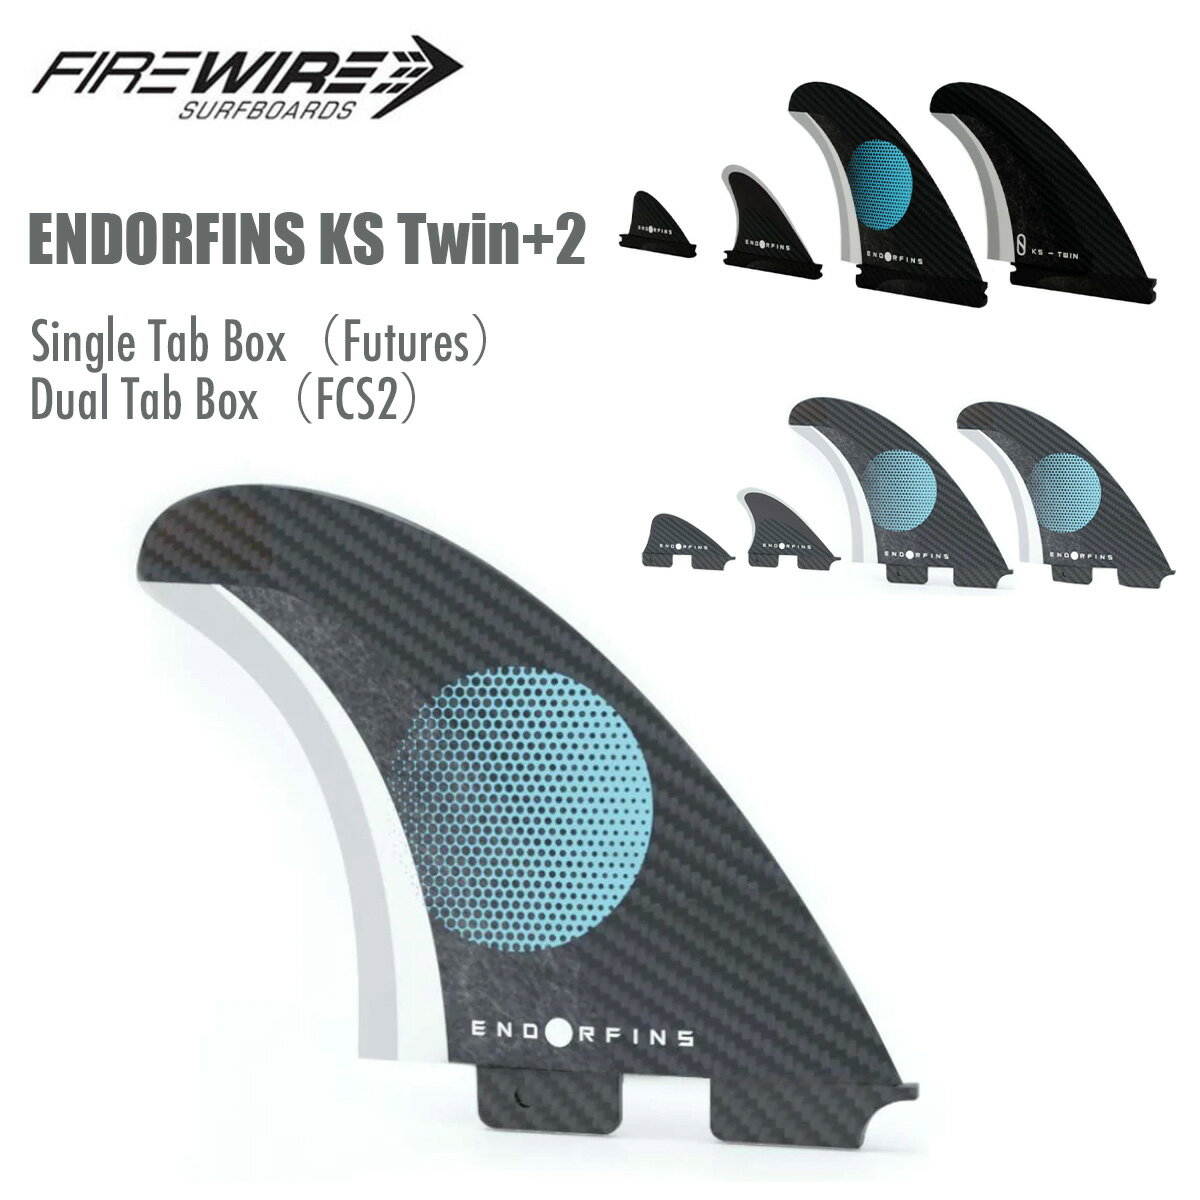 サーフィン フィン ファイヤーワイヤー スレーターデザイン FIREWIRE Slater Designs ENDORFINS KS Twin 2 ツインフィン スタビライザー ナブスター セット 4枚 水に浮く フューチャー用 FCS2用 スクリュー付 フィンキー付 正規品